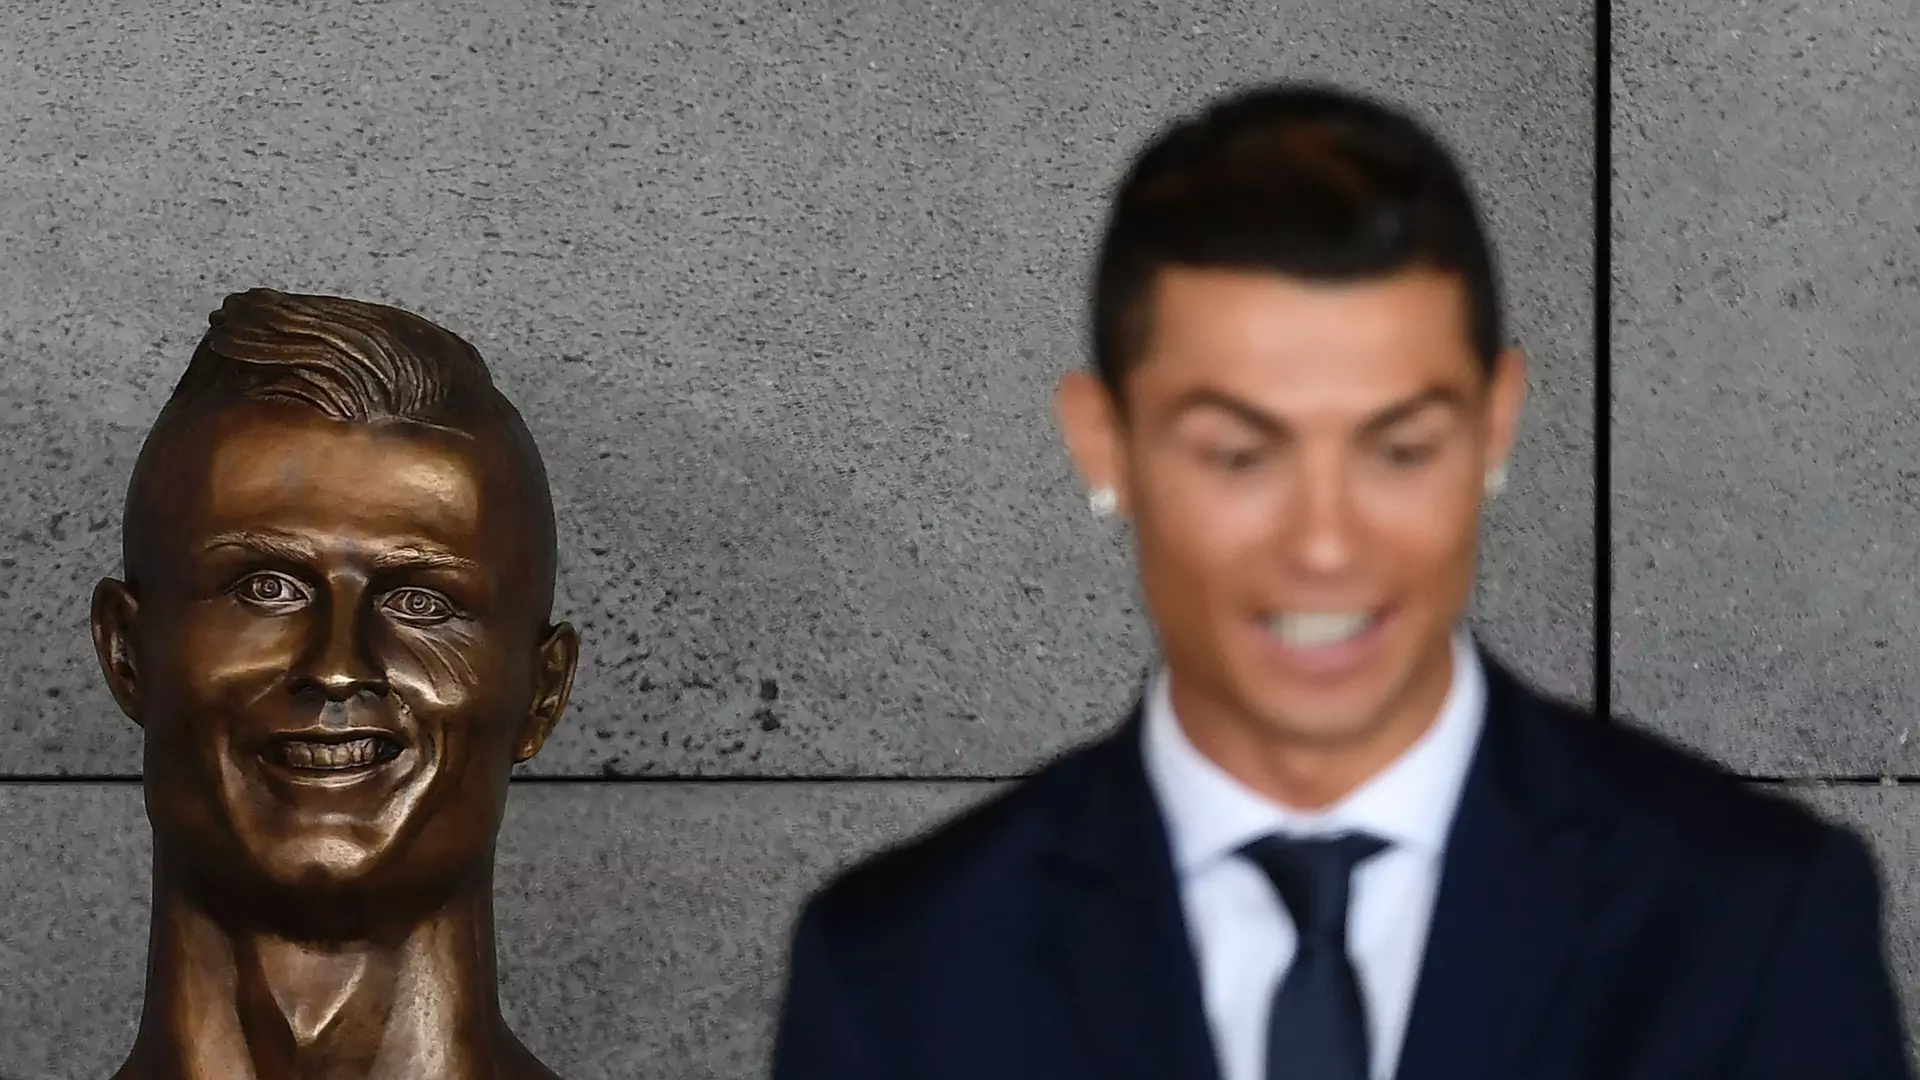 Ronaldo ma swoje lotnisko, a na nim popiersie. Czegoś tak paskudnego dawno nie widzieliście